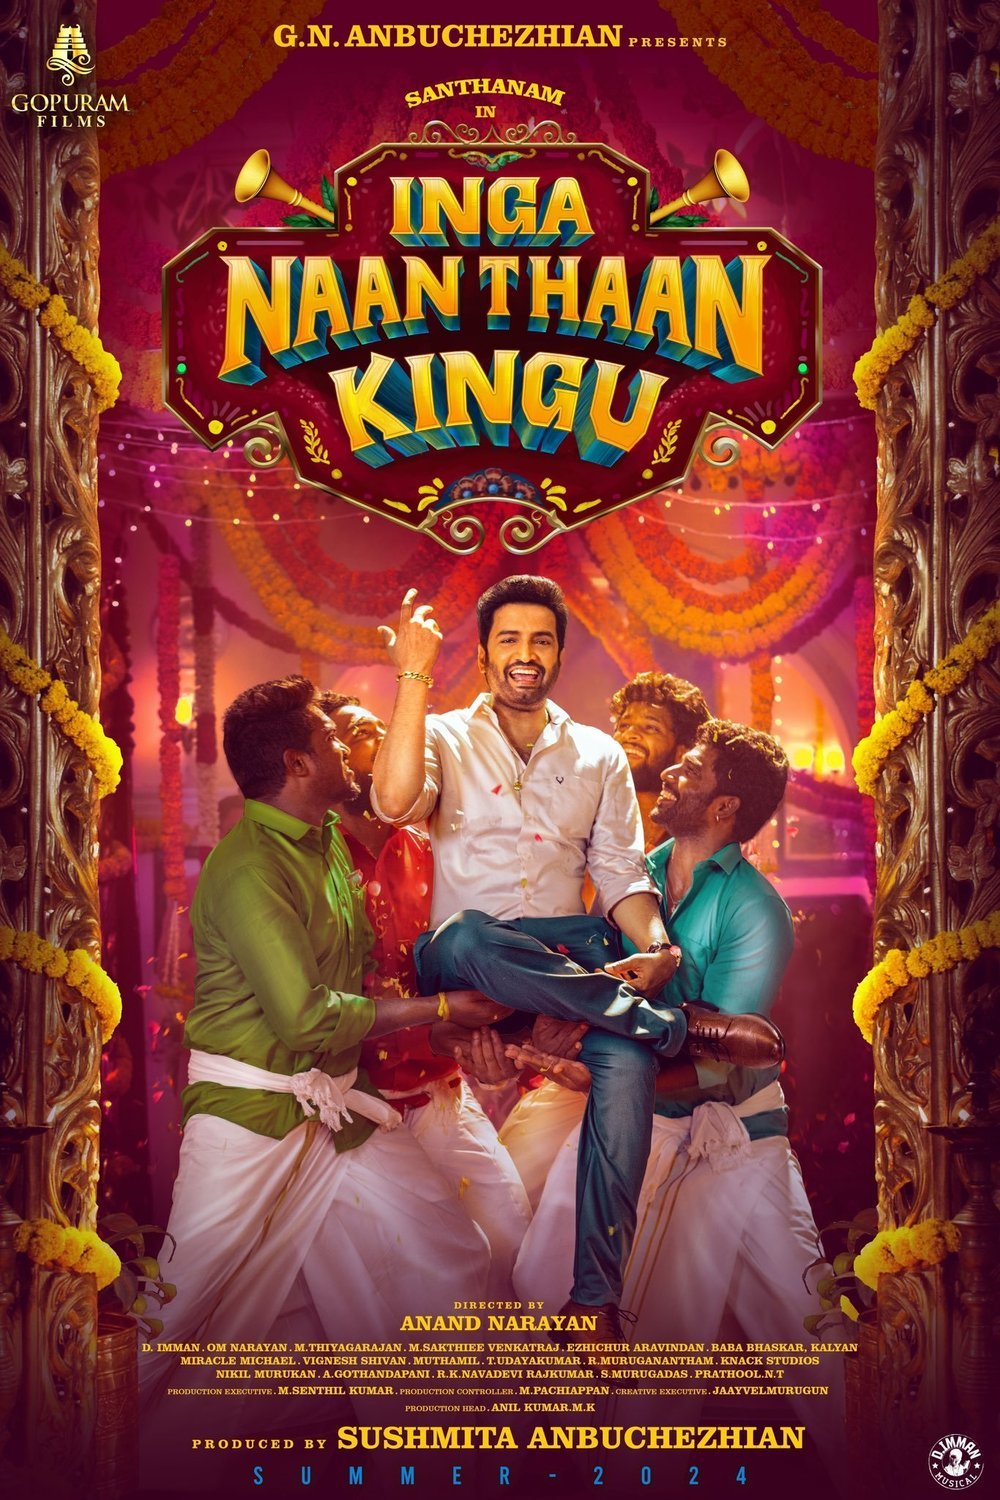 Tamil poster of the movie Inga Naan Thaan Kingu